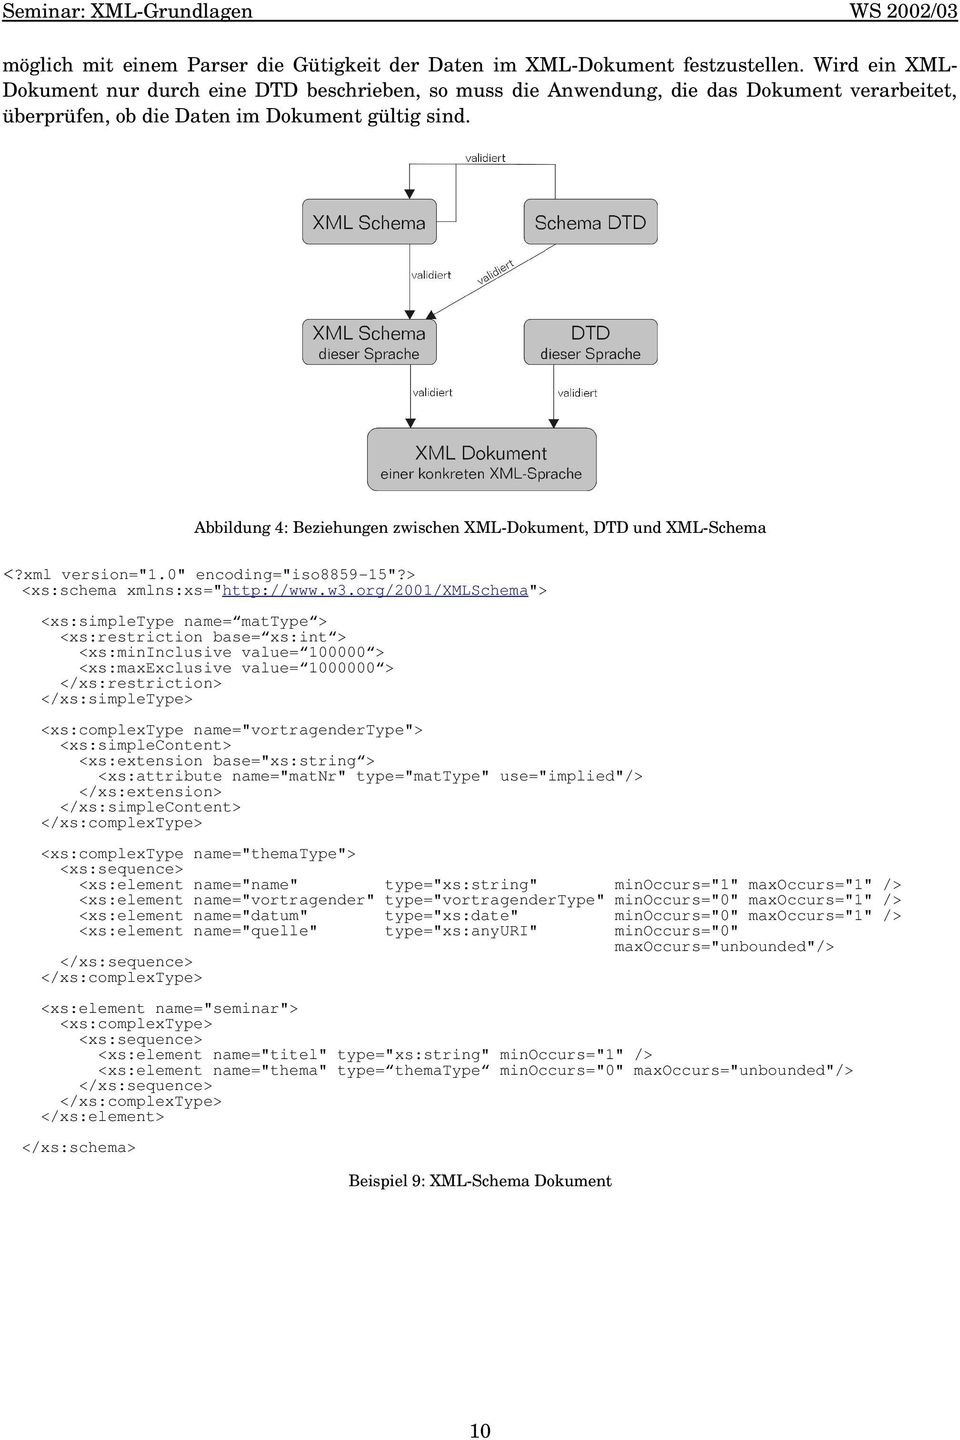 Abbildung 4: Beziehungen zwischen XML-Dokument, DTD und XML-Schema <?xml version="1.0" encoding="iso8859-15"?> <xs:schema xmlns:xs="http://www.w3.